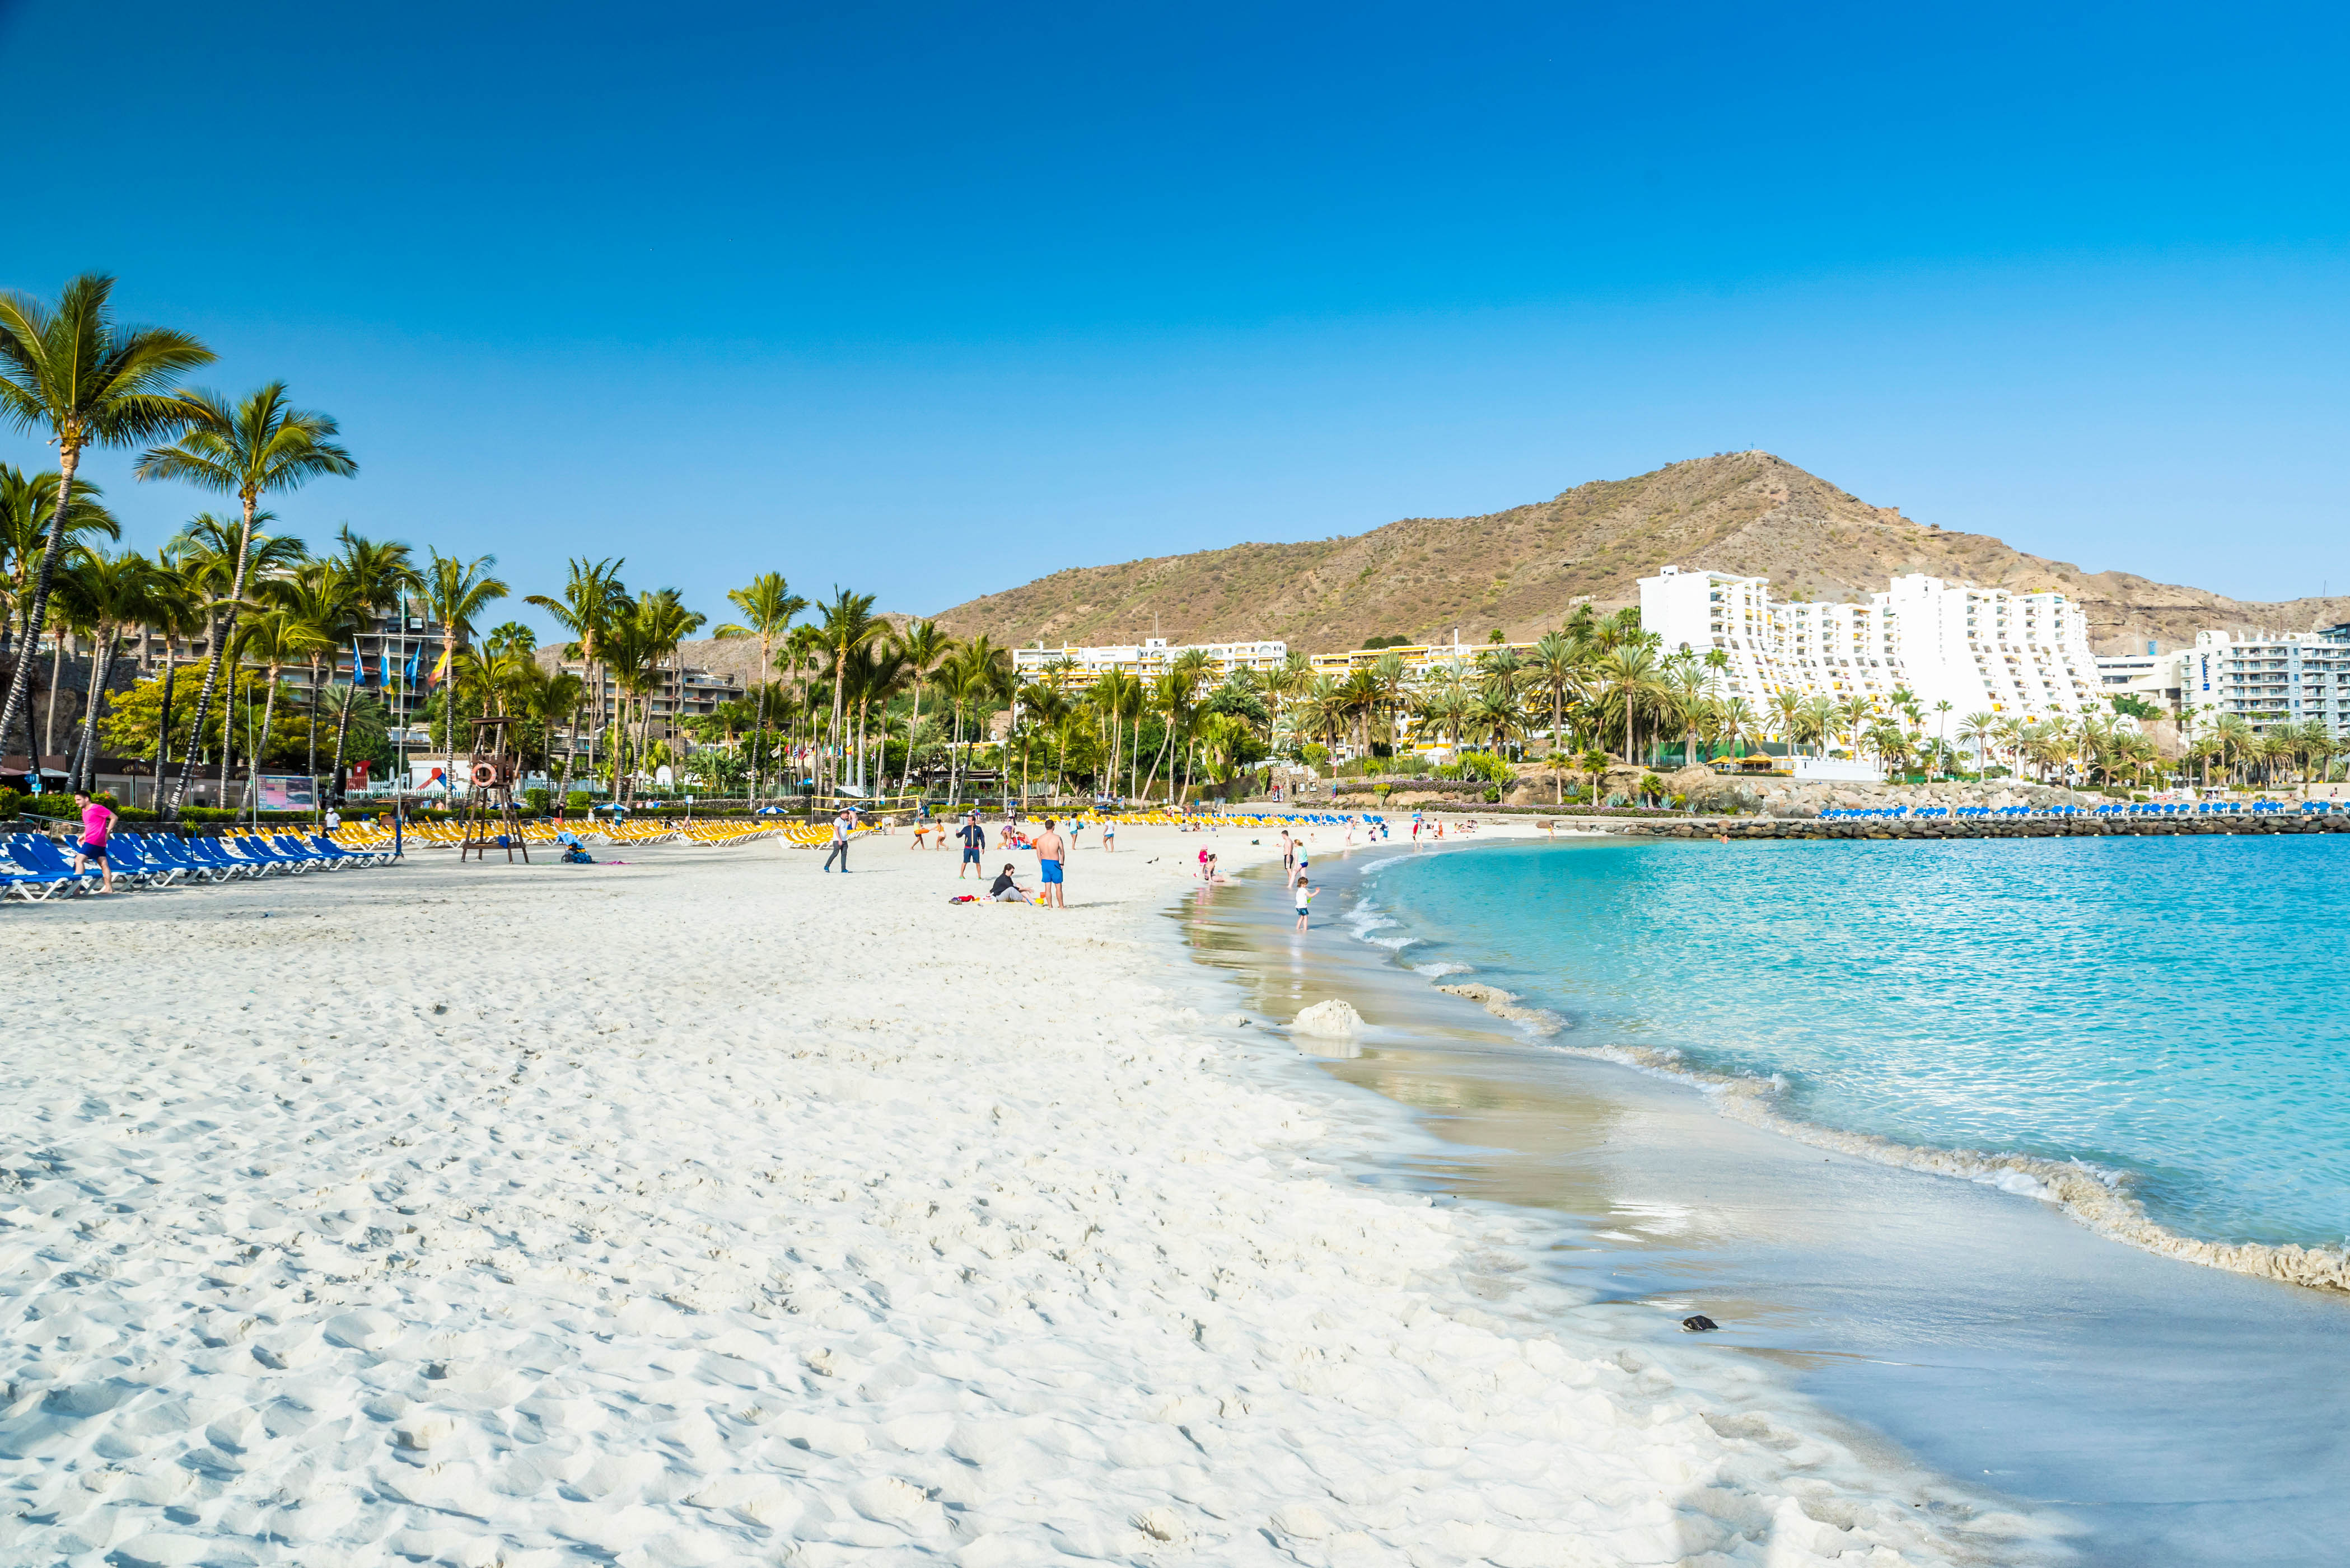  Gran Canaria Die Besten Tipps Und G nstige Angebote Urlaubsguru